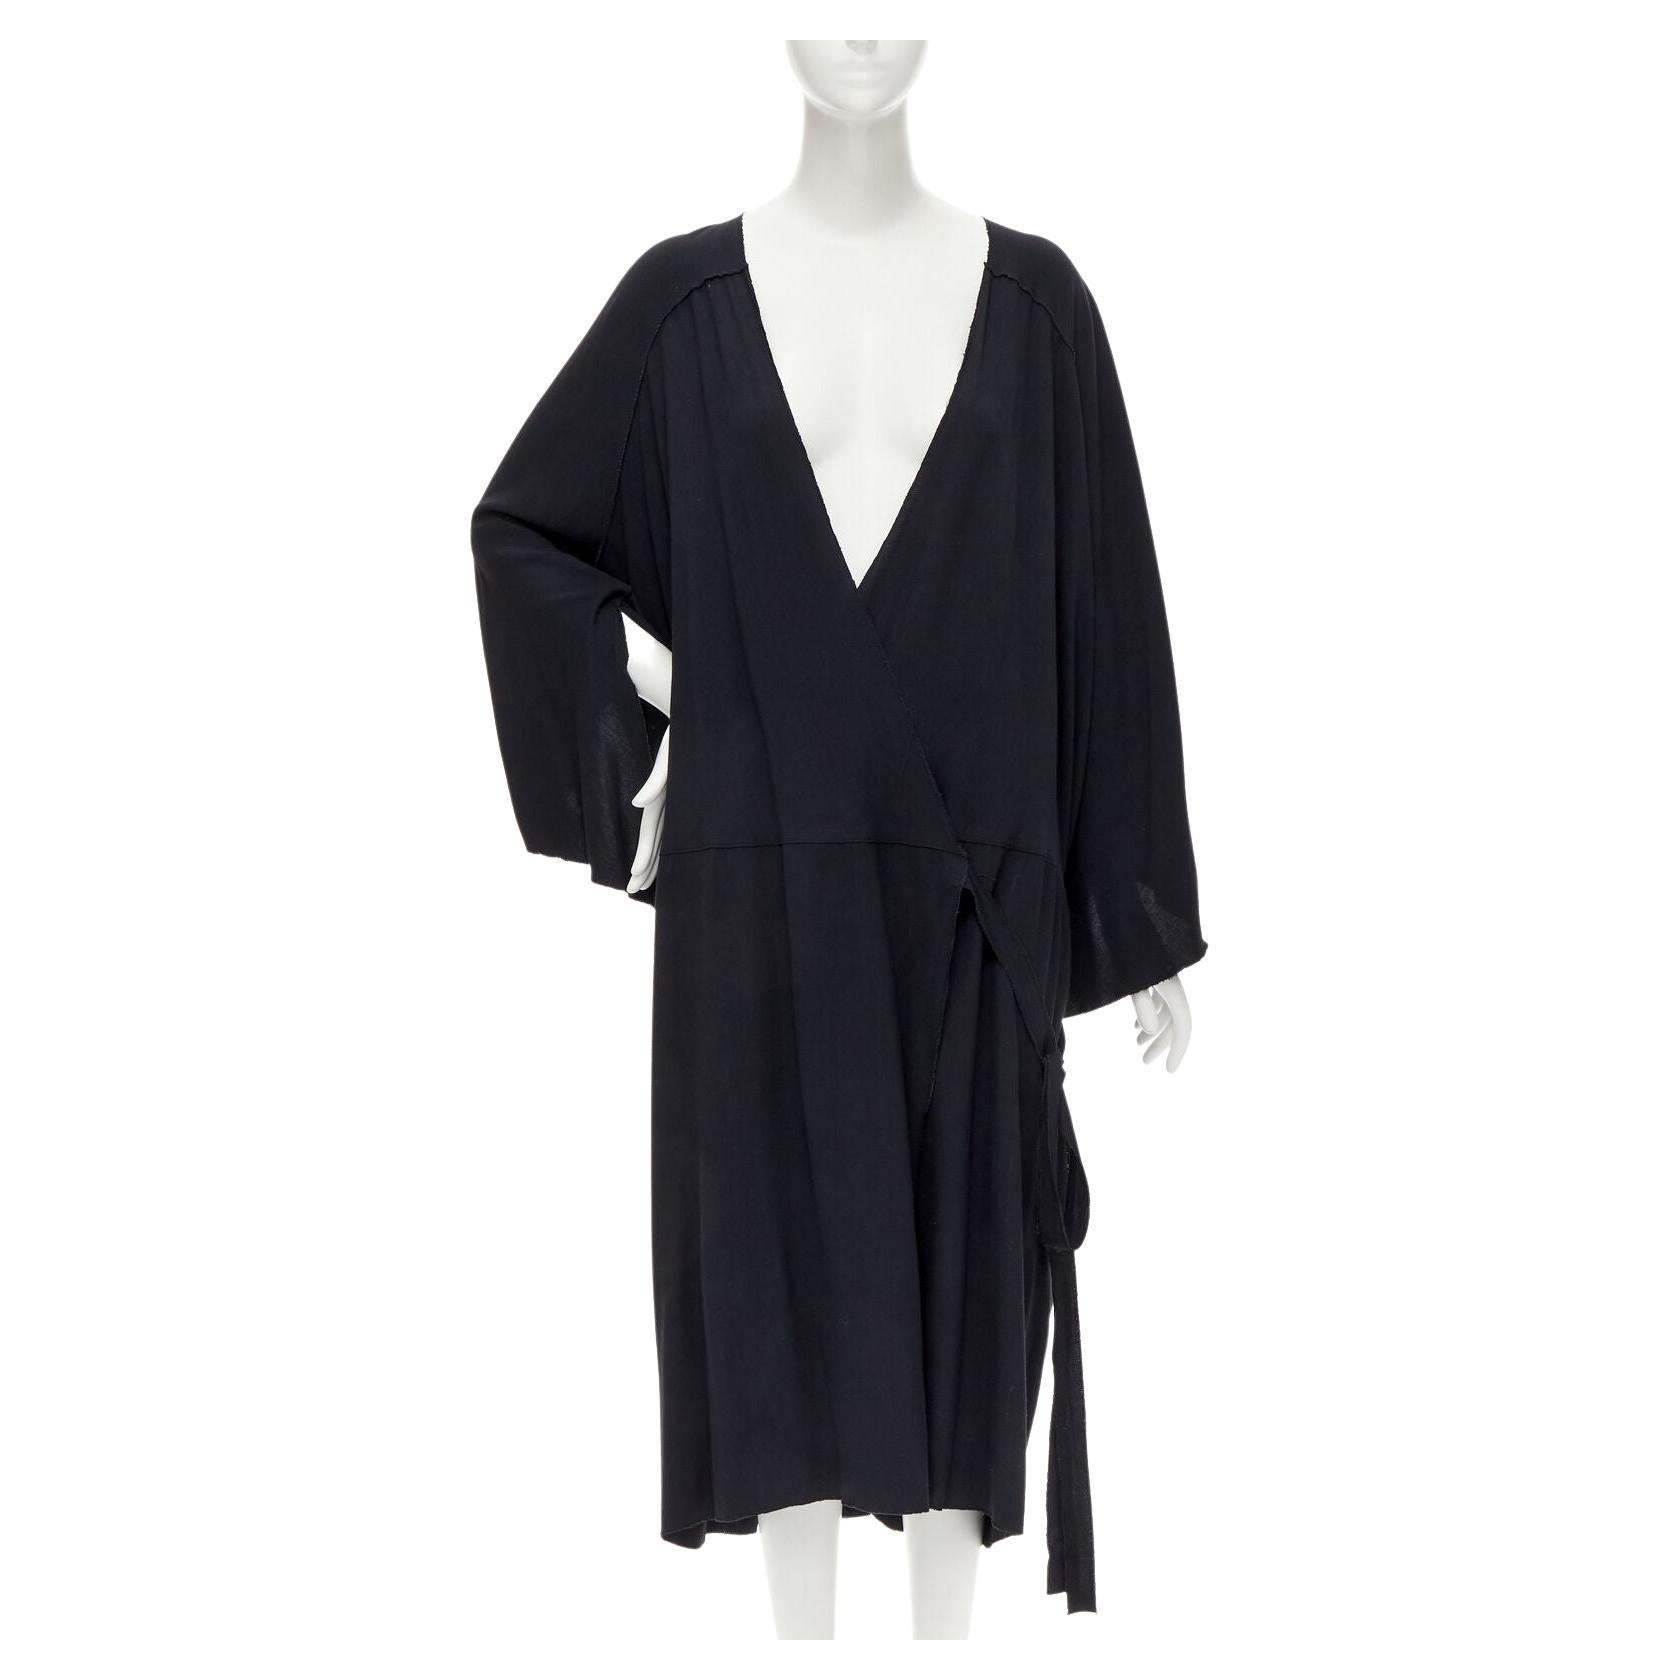 What is a kimono style robe?